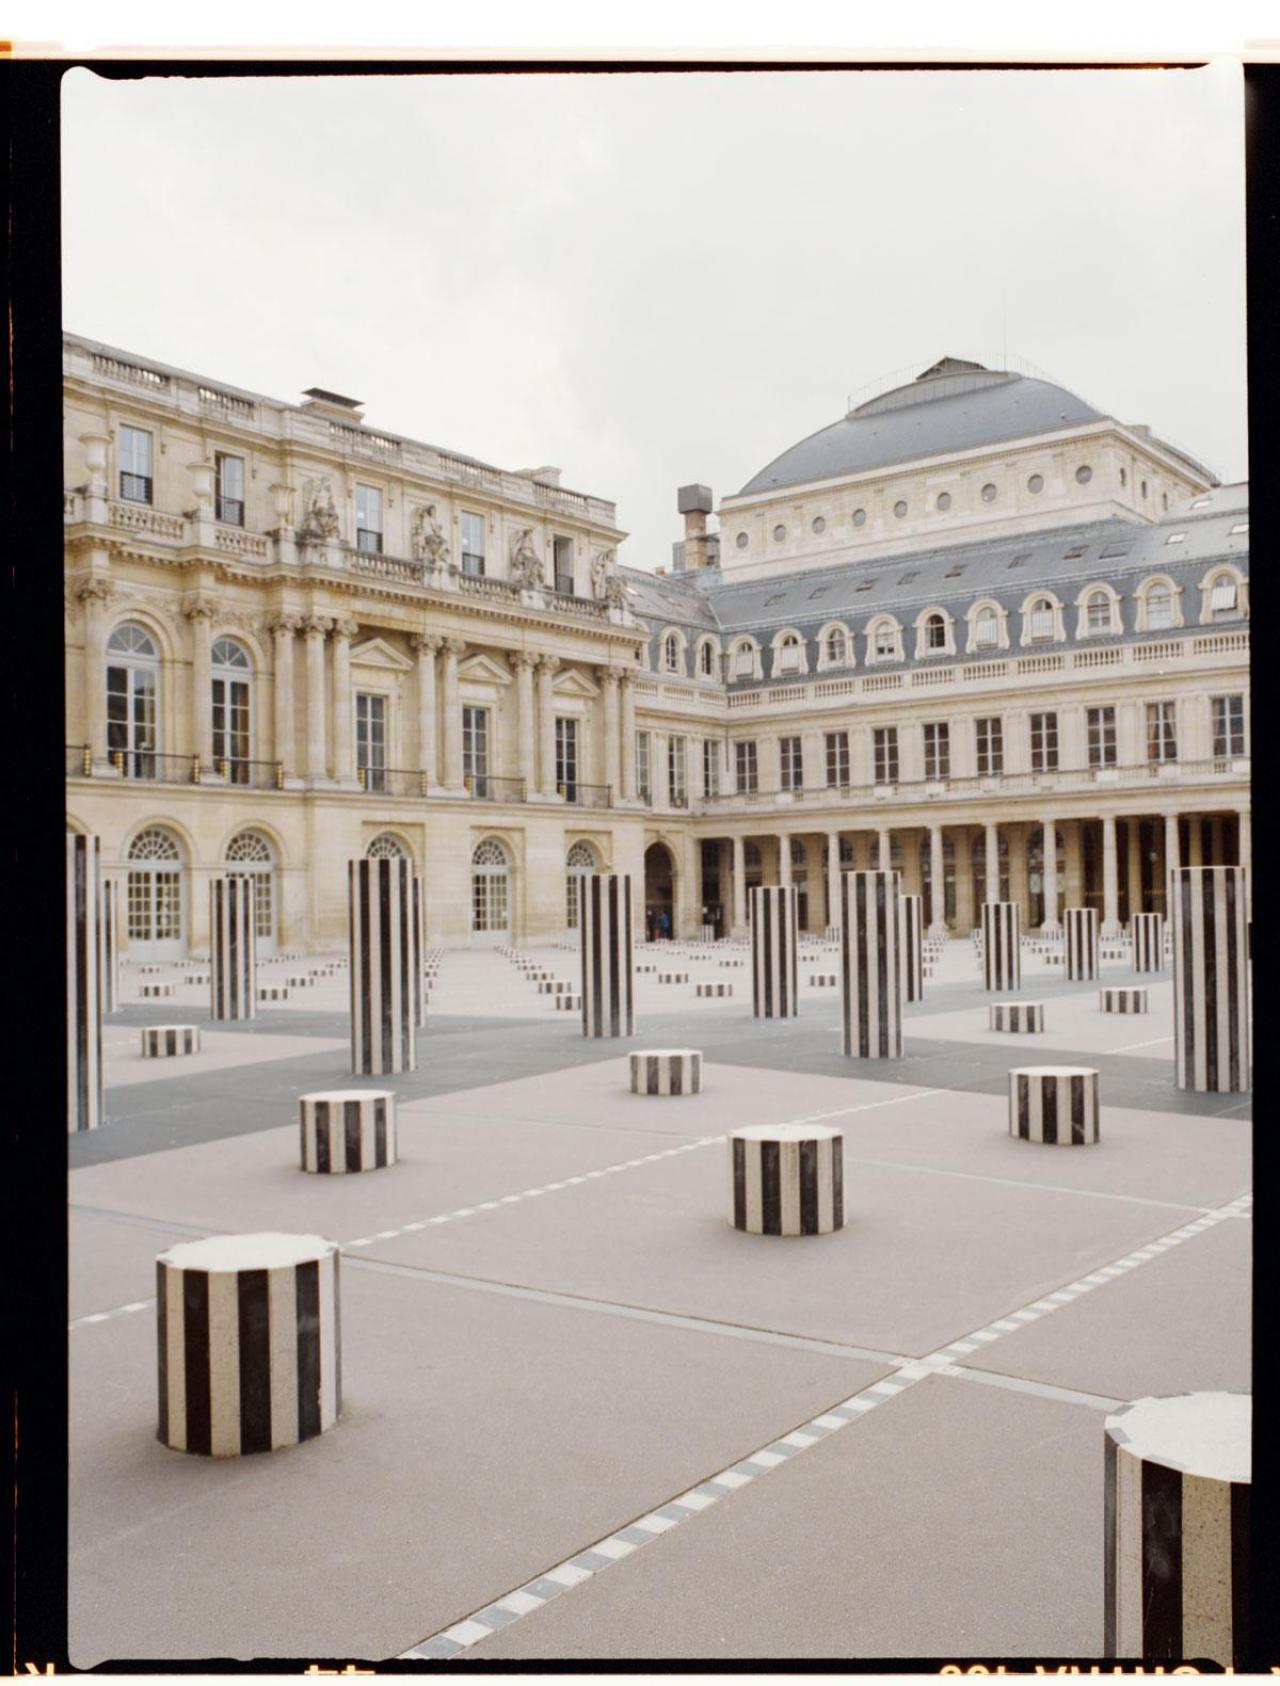 Dans la cour du Palais Royal, sur les colonnes de Buren, une dream team. Thomas Tistounet, le fondateur du showroom Untitled, accompagne les premiers pas de Cyril Bourez sur la scène mode.